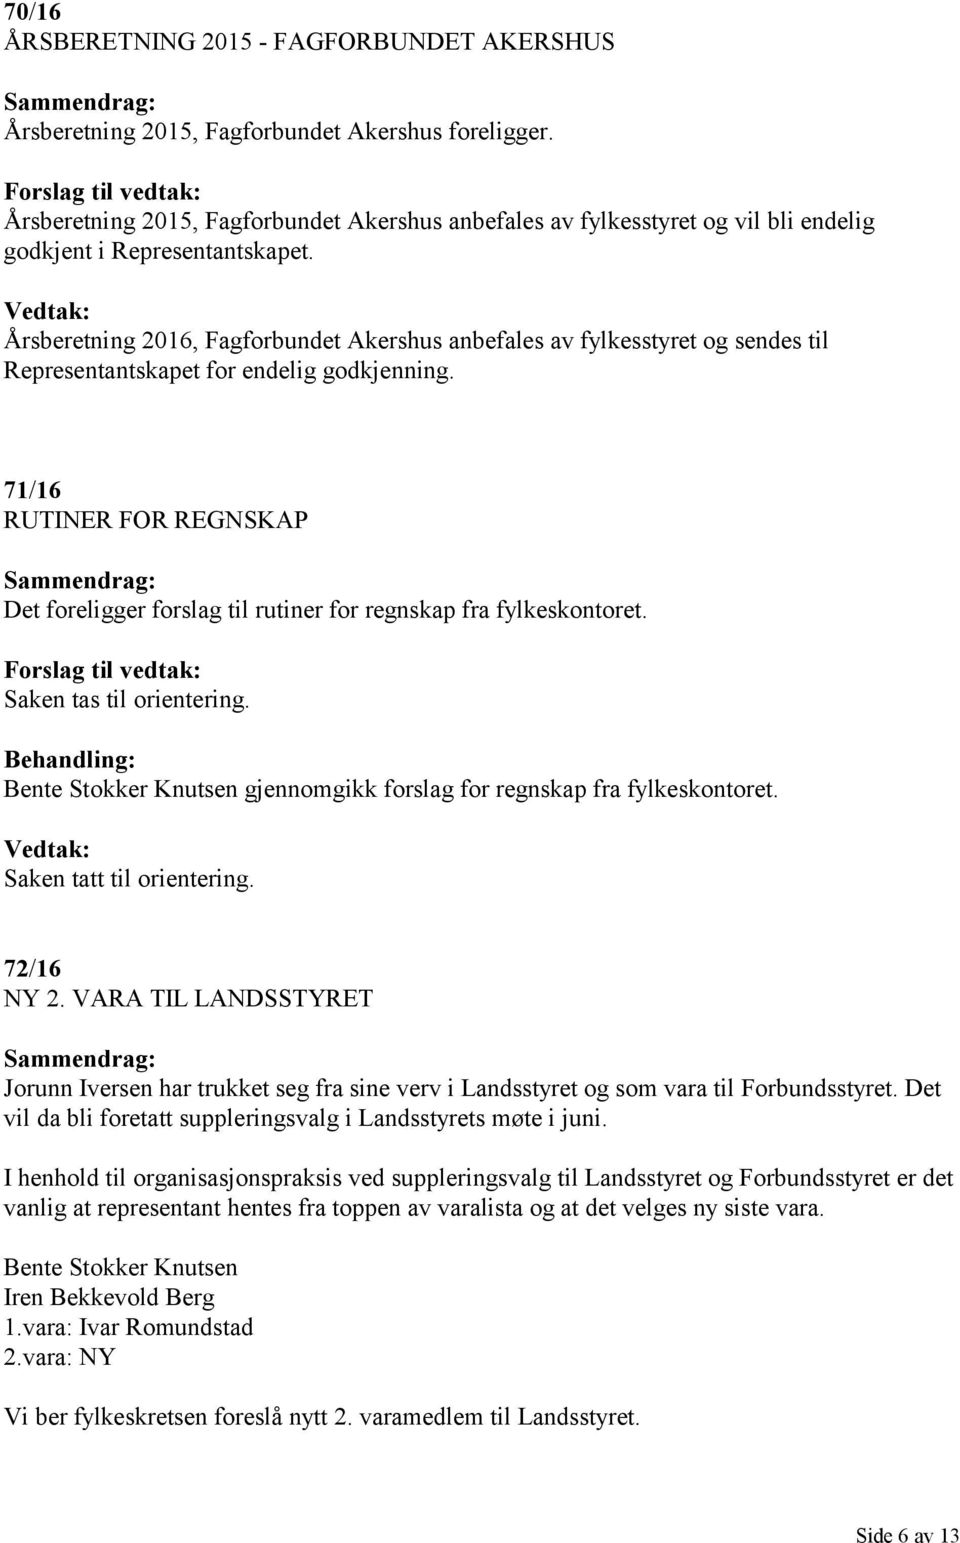 Årsberetning 2016, Fagforbundet Akershus anbefales av fylkesstyret og sendes til Representantskapet for endelig godkjenning.